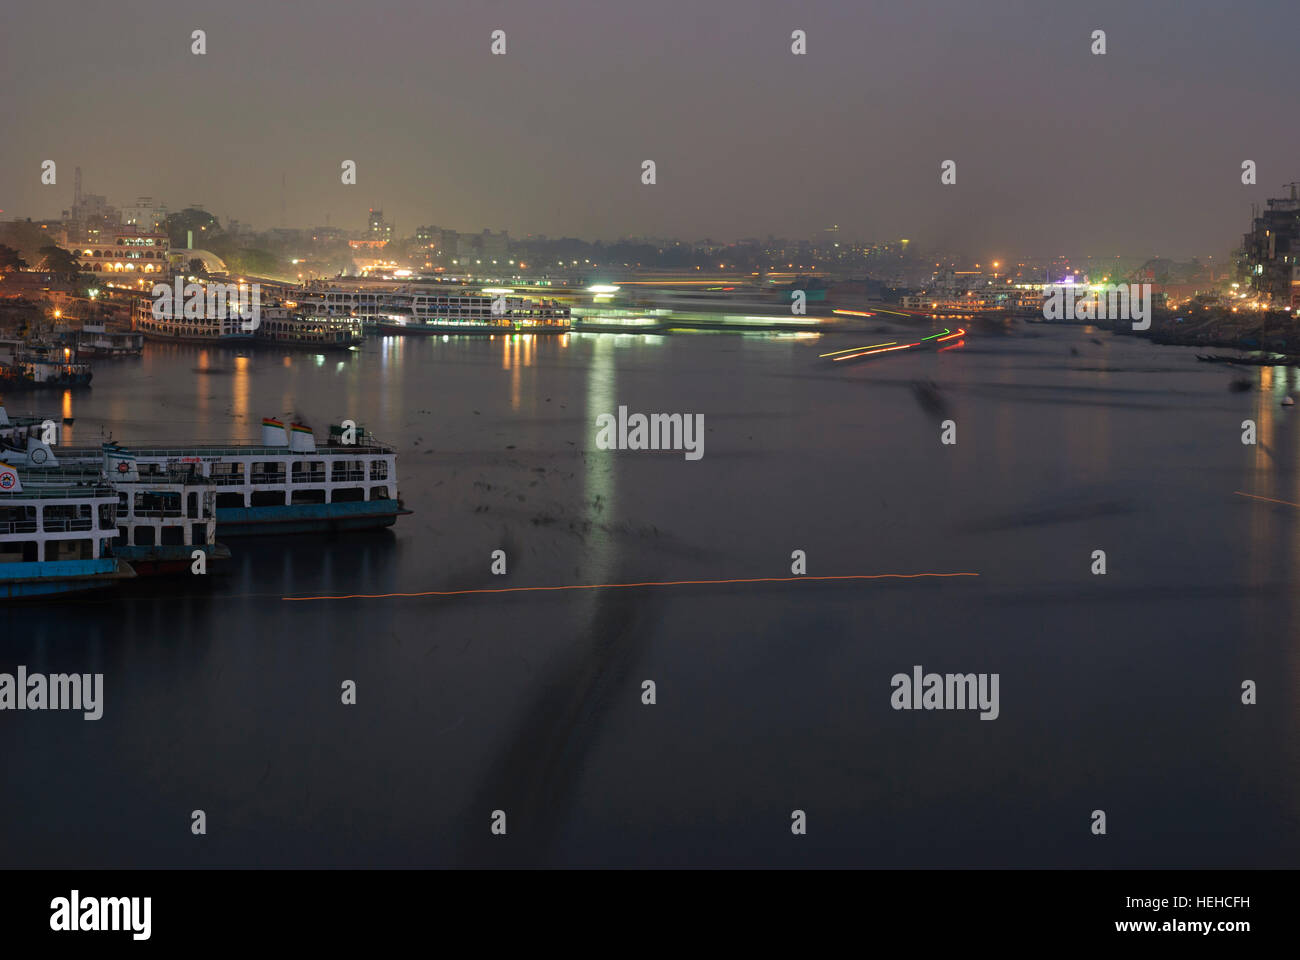 Dhaka: Buriganga river with ships, Dhaka Division, Bangladesh Stock Photo